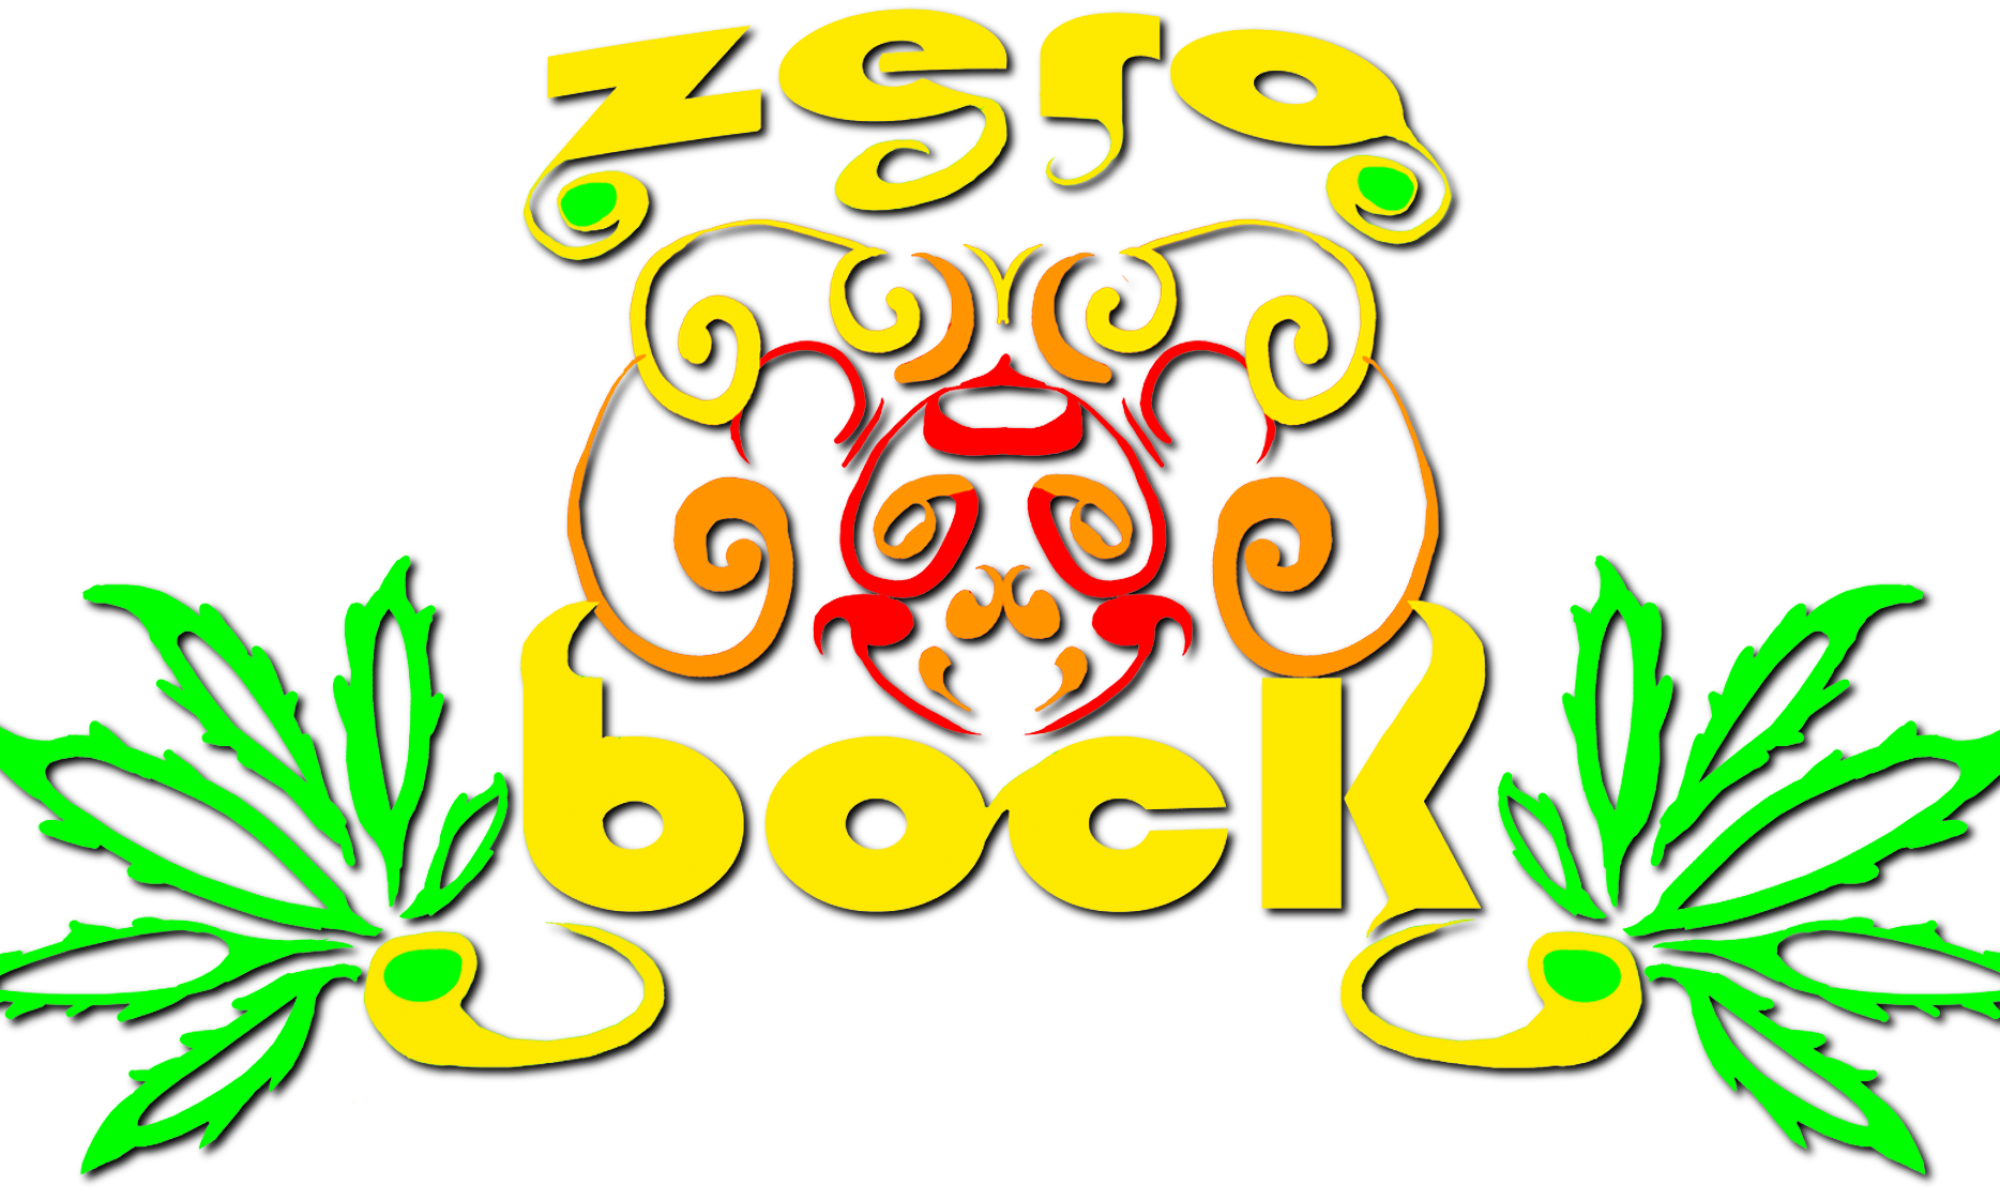 Zero Bock